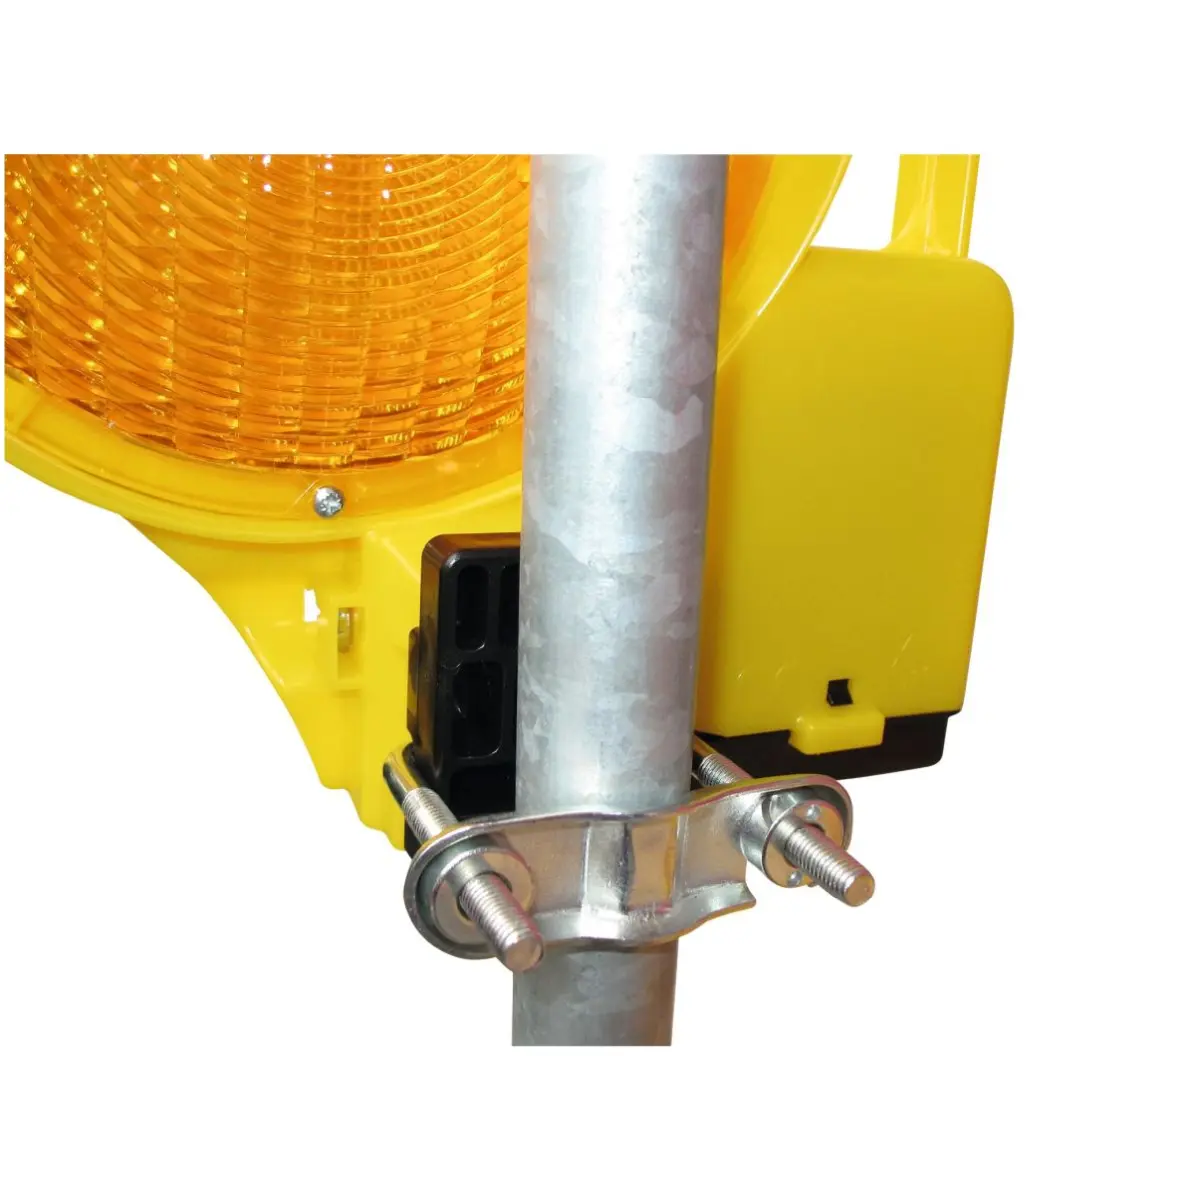 Warnleuchten BakoLight LED 1seitig gelb, Blink- Dauerlicht, 6V, mit Halter für Baustellenabsicherung